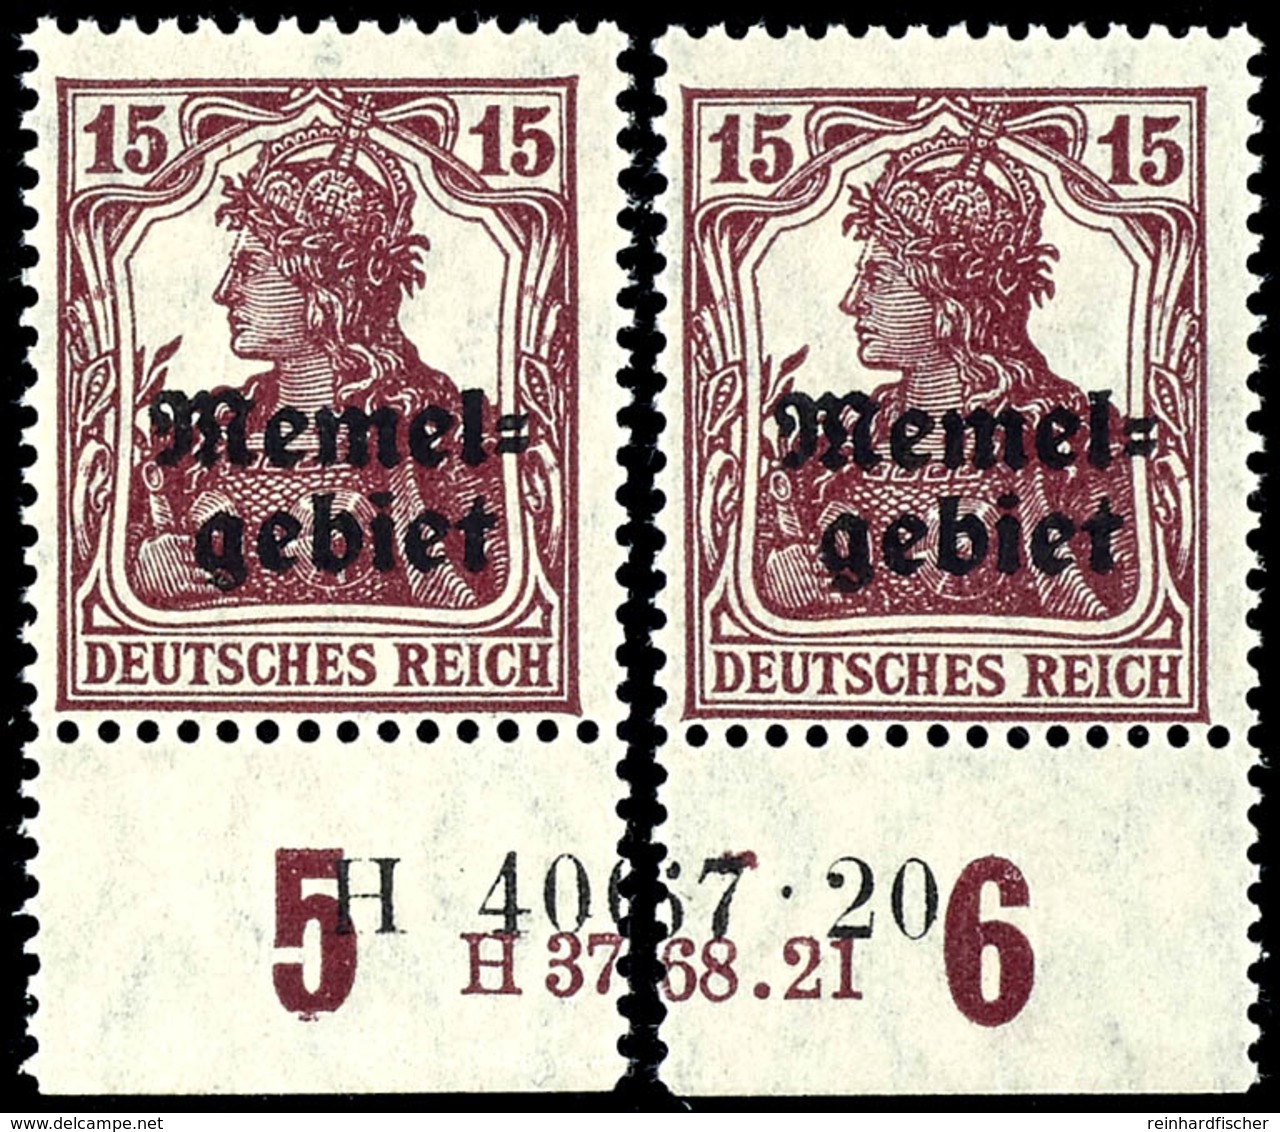 15 Pfennig Germania Mit Aufdruck, Senkrecht Geriffelte Gummierung, Postfrisch, Geteiltes Unterrandpaar Mit HAN-U 3768.21 - Klaipeda 1923